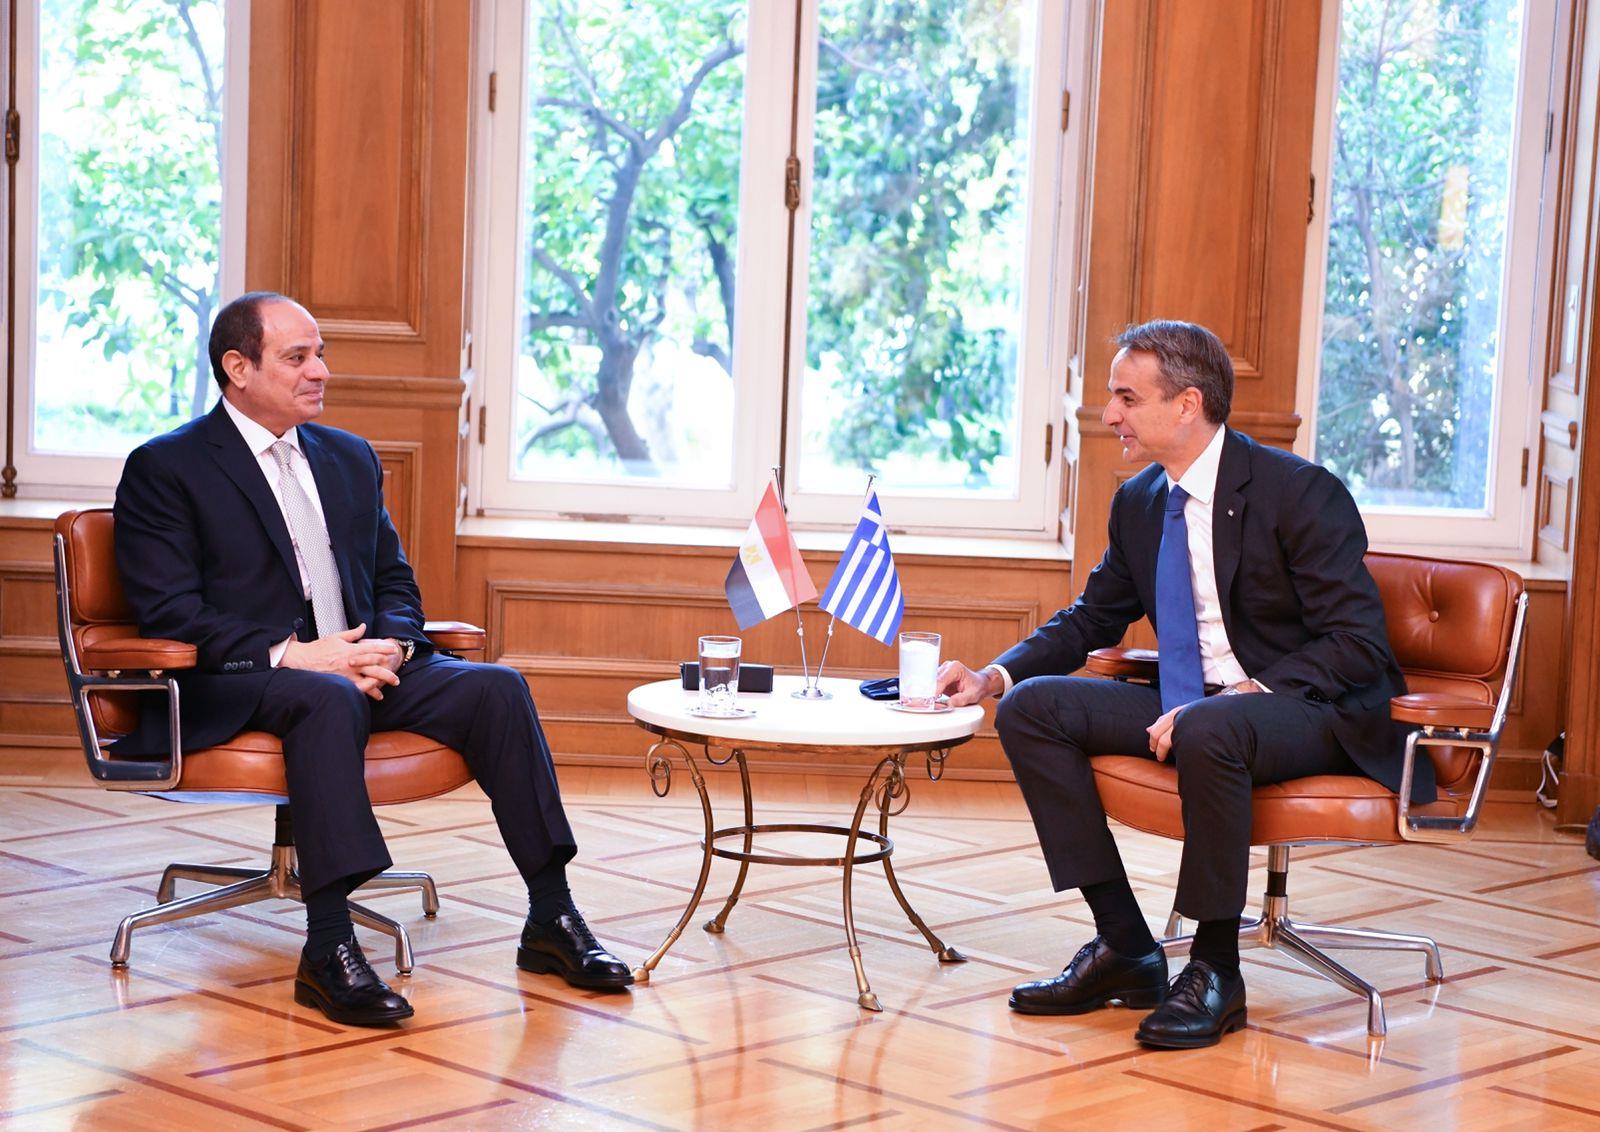 القمة الثلاثية بين مصر وقبرص واليونان  ووصول الرئيس السيسي العاصمة اليونانية أثينا